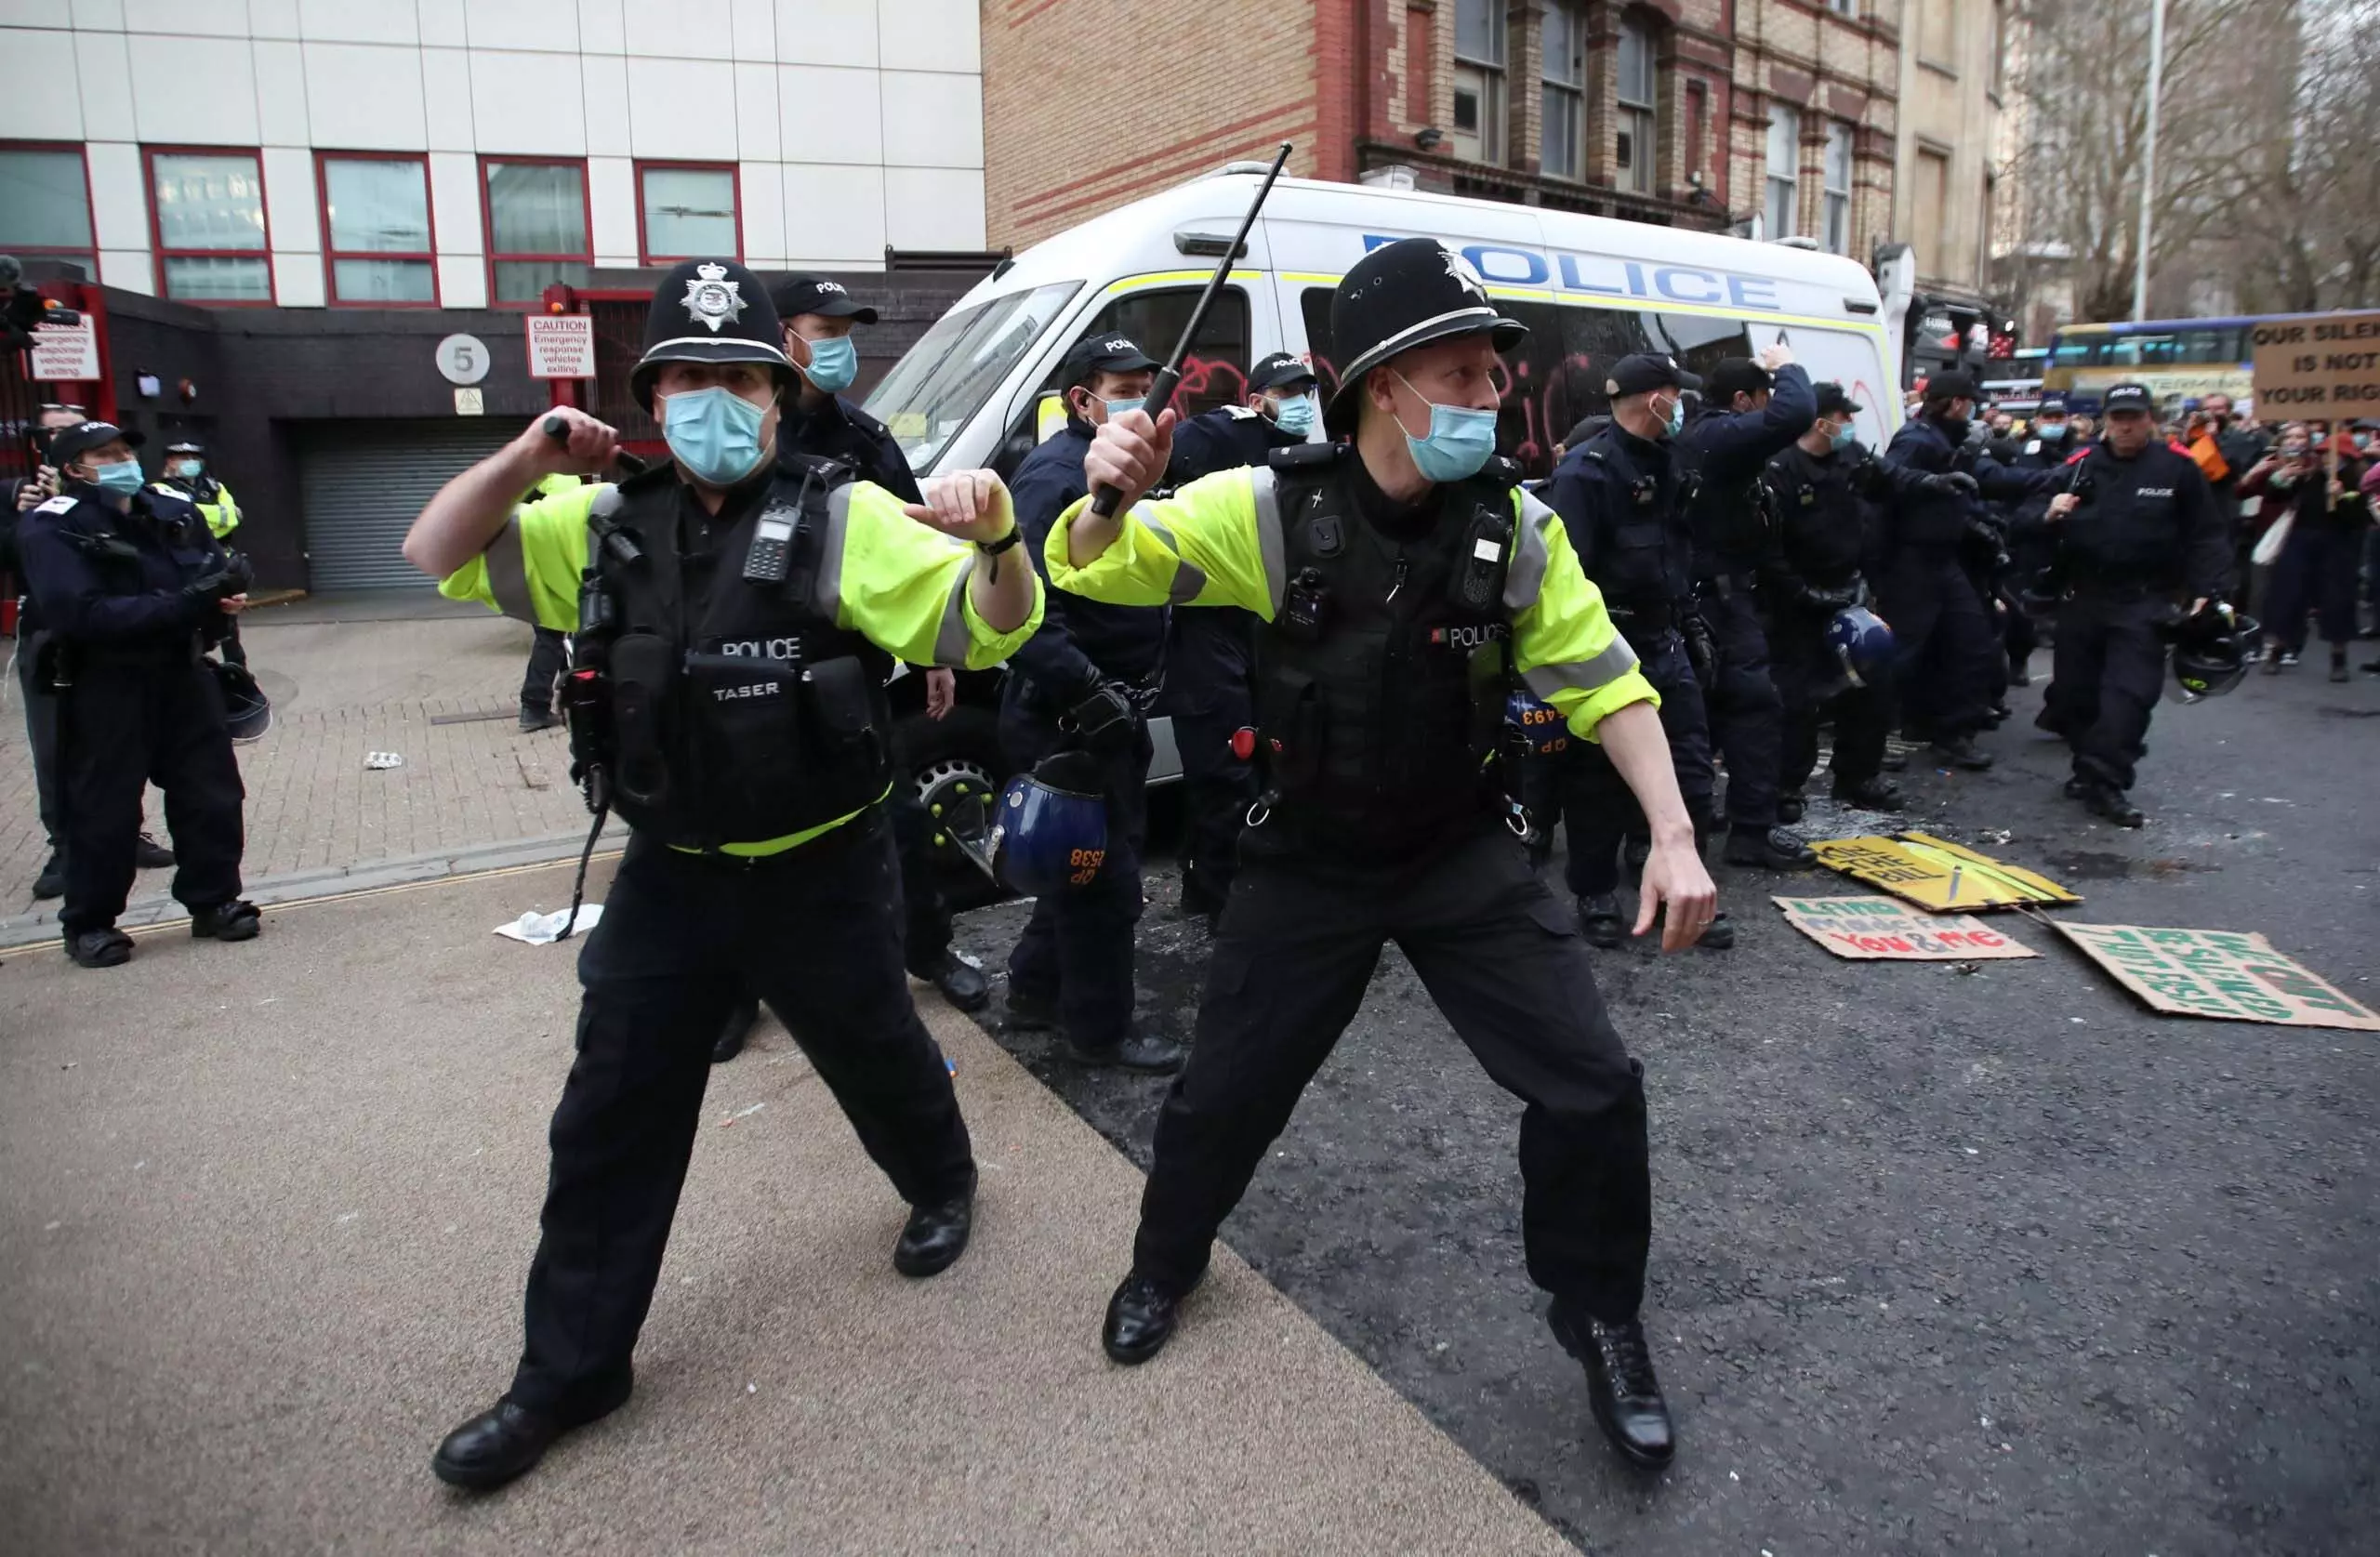 British cities में पुलिस को गंभीर अव्यवस्था का सामना करना पड़ रहा